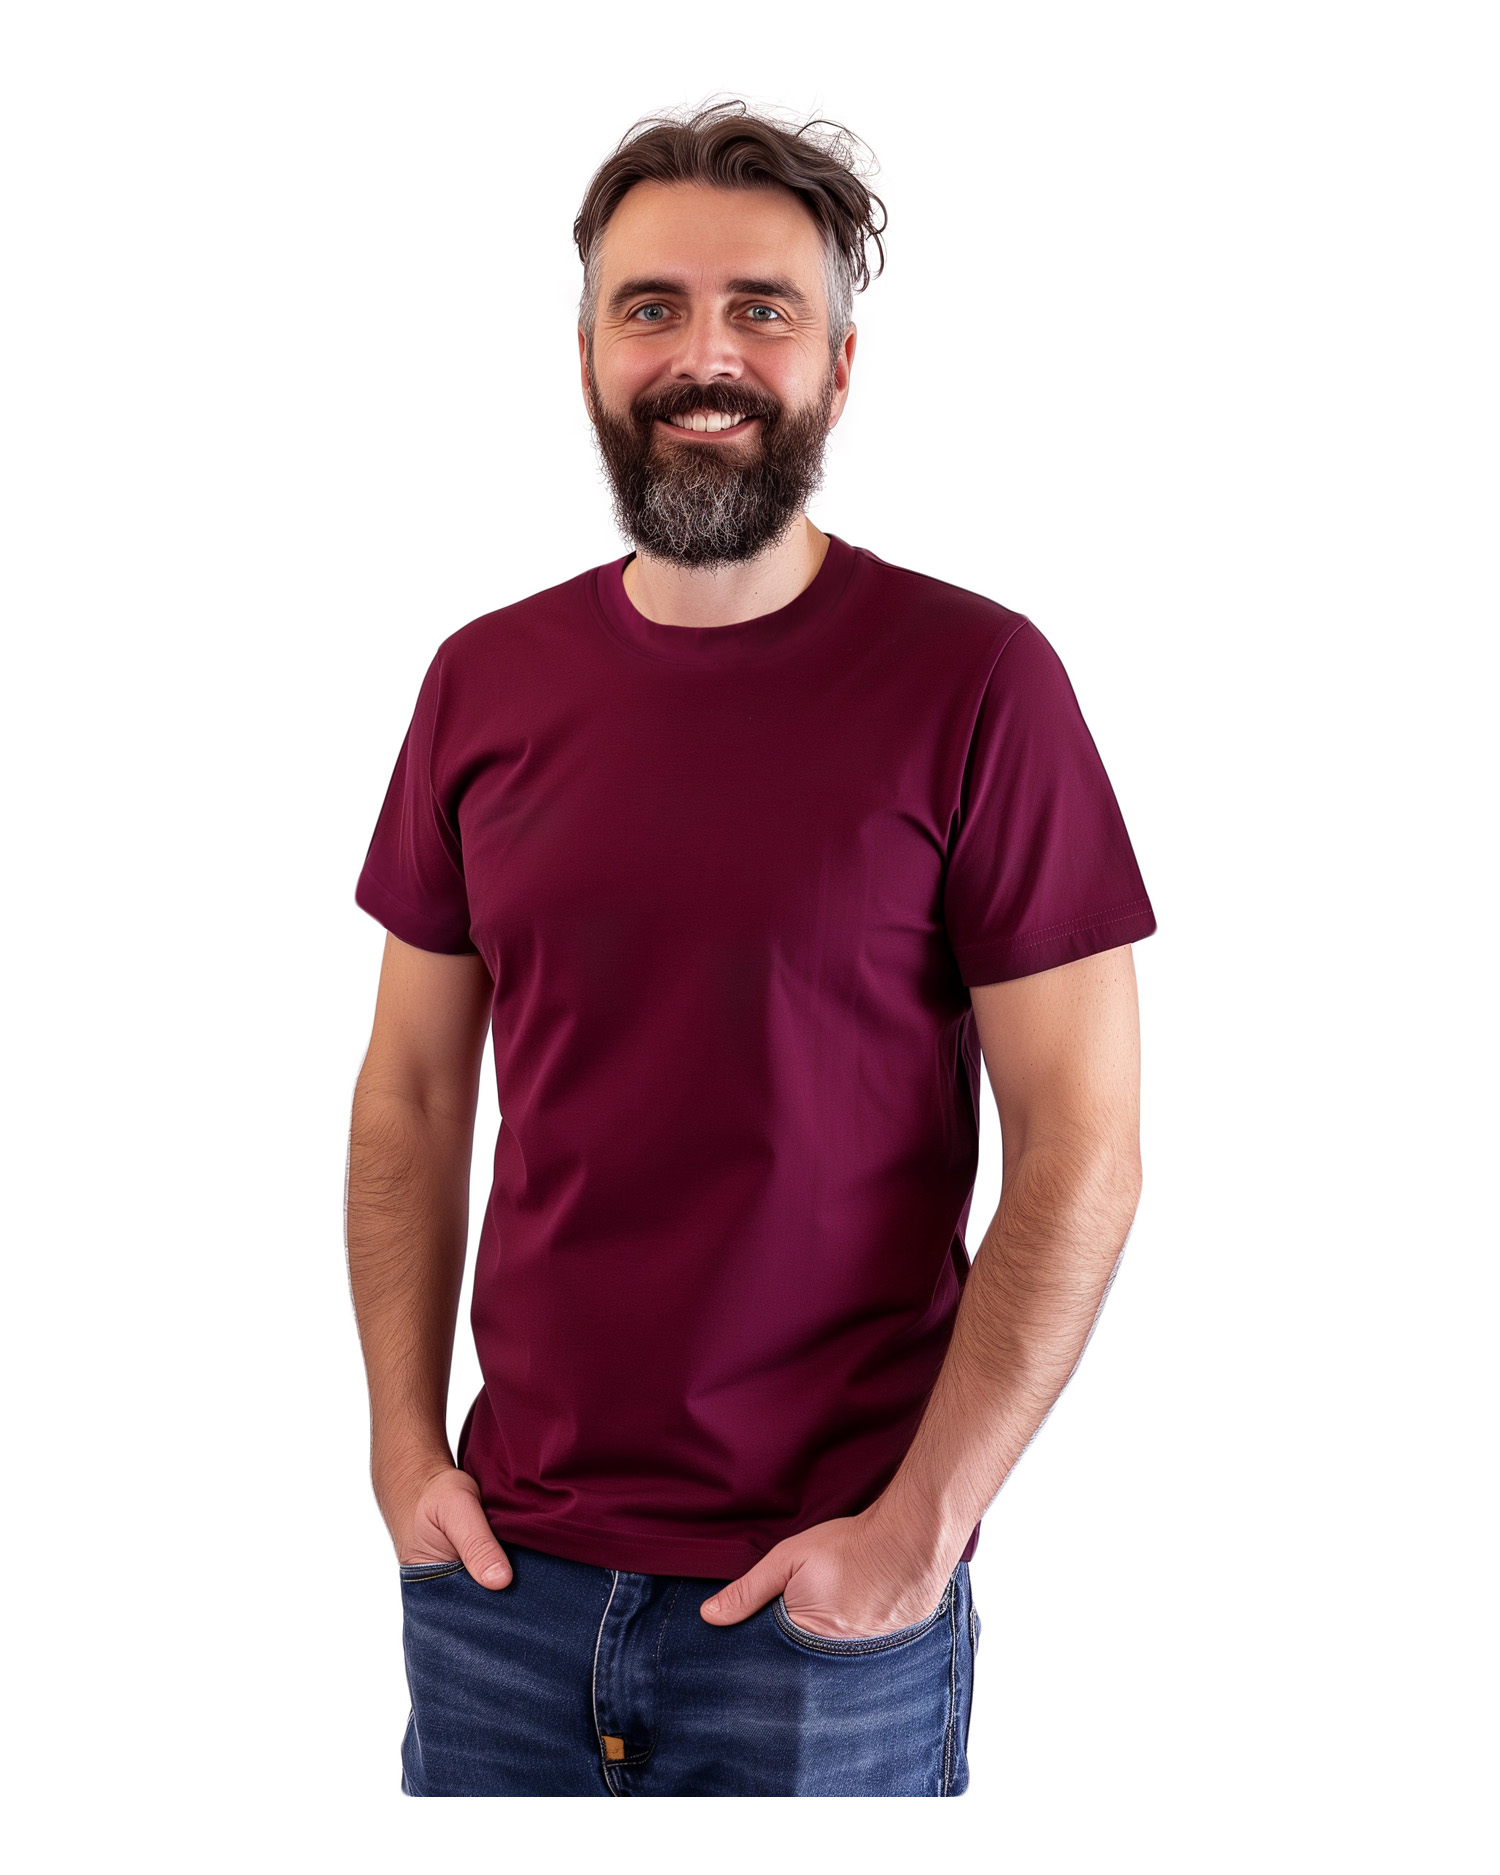 Men’s T-shirt Marek, short sleeve, cyklamen